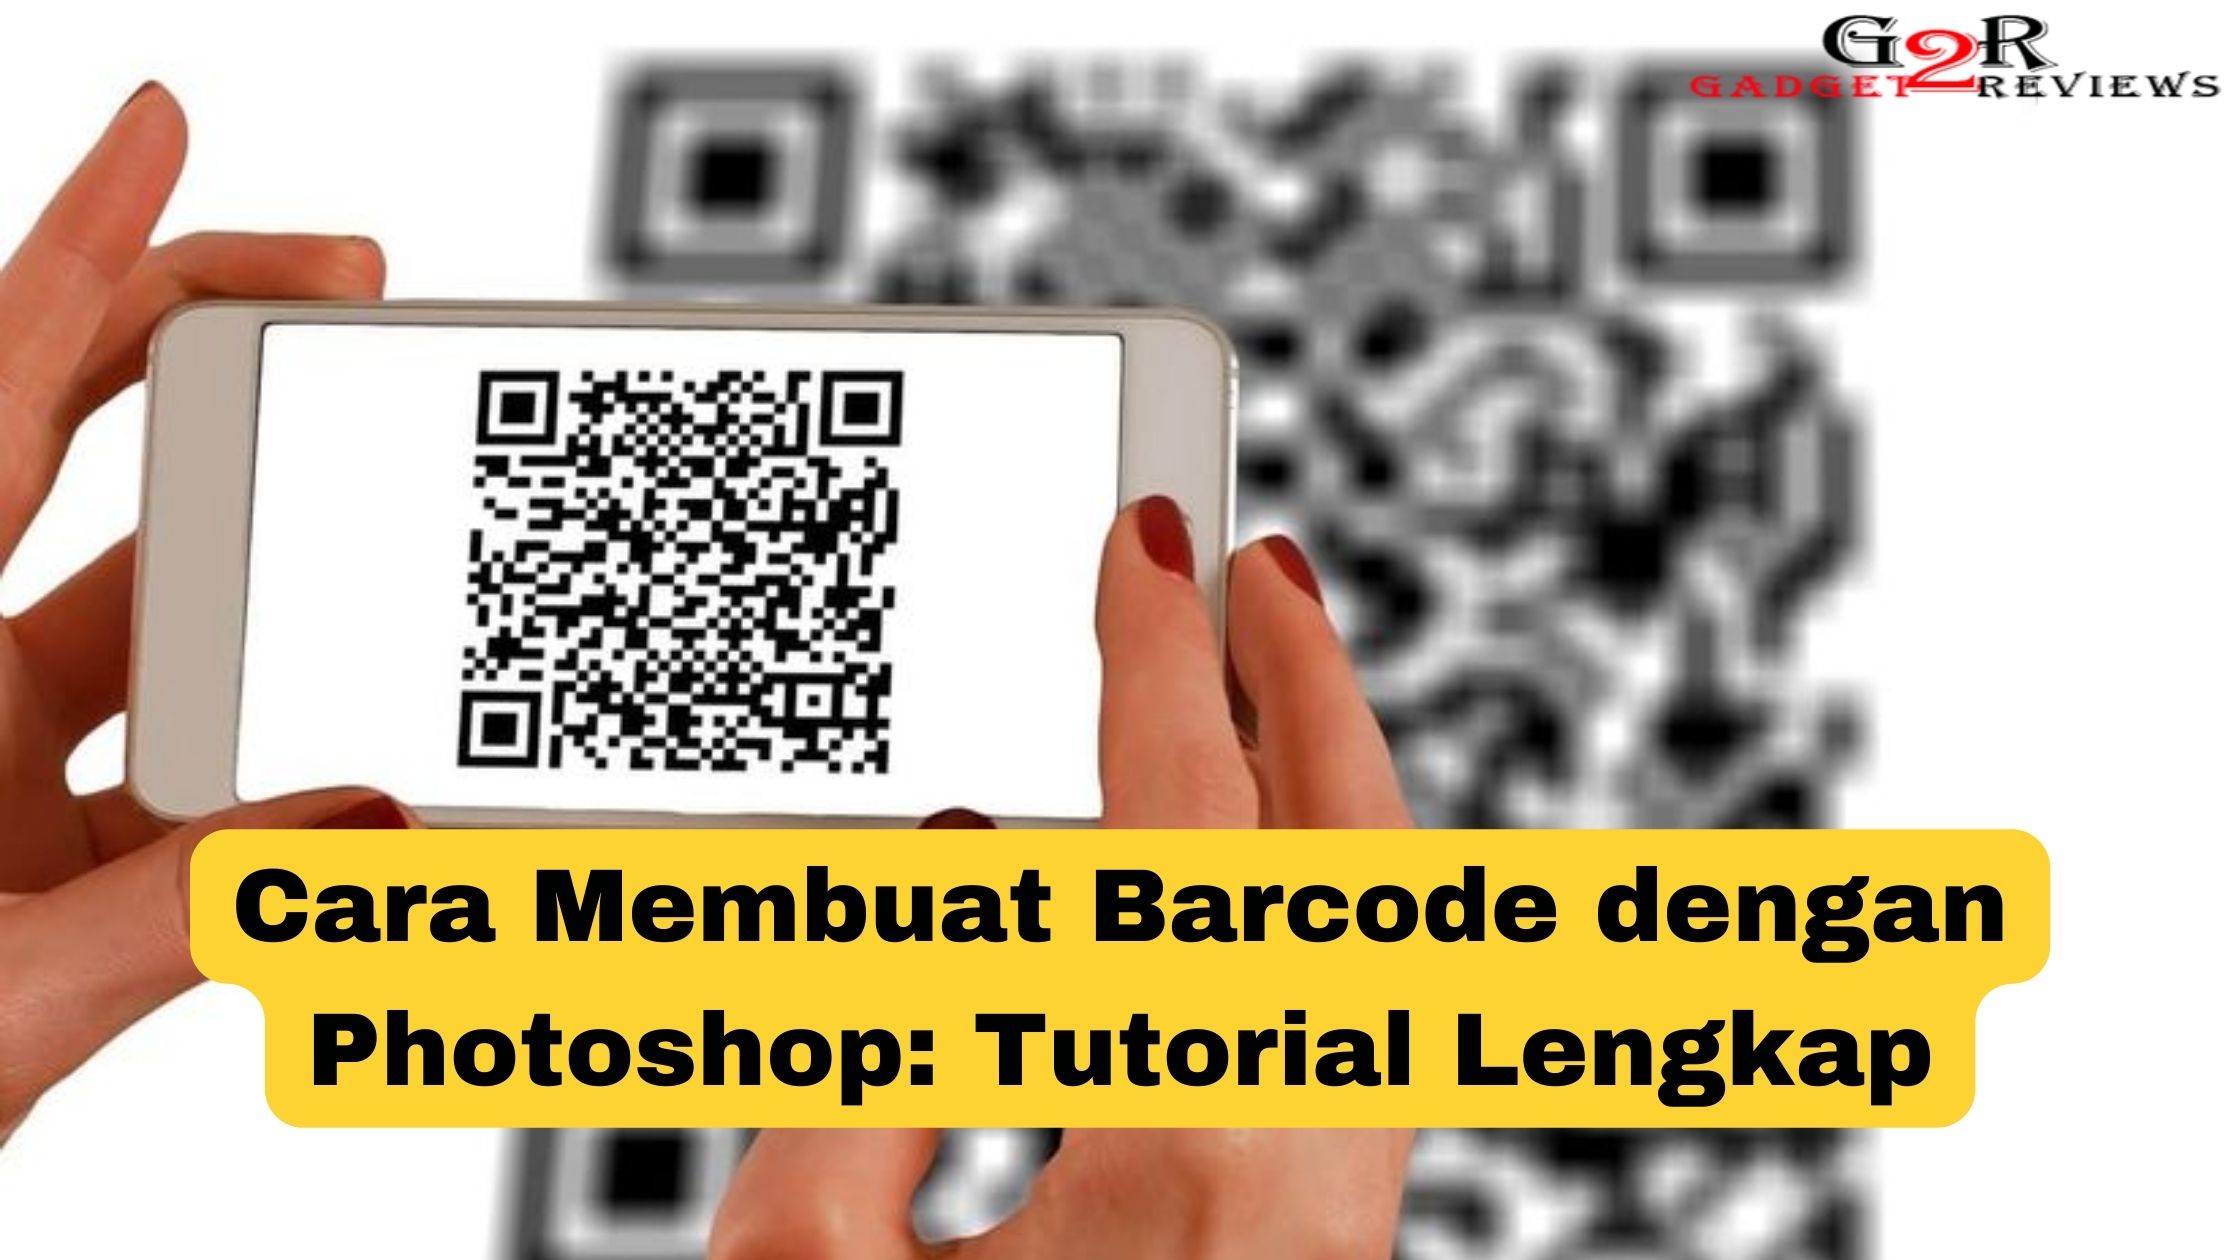 Cara Membuat Barcode dengan Photoshop